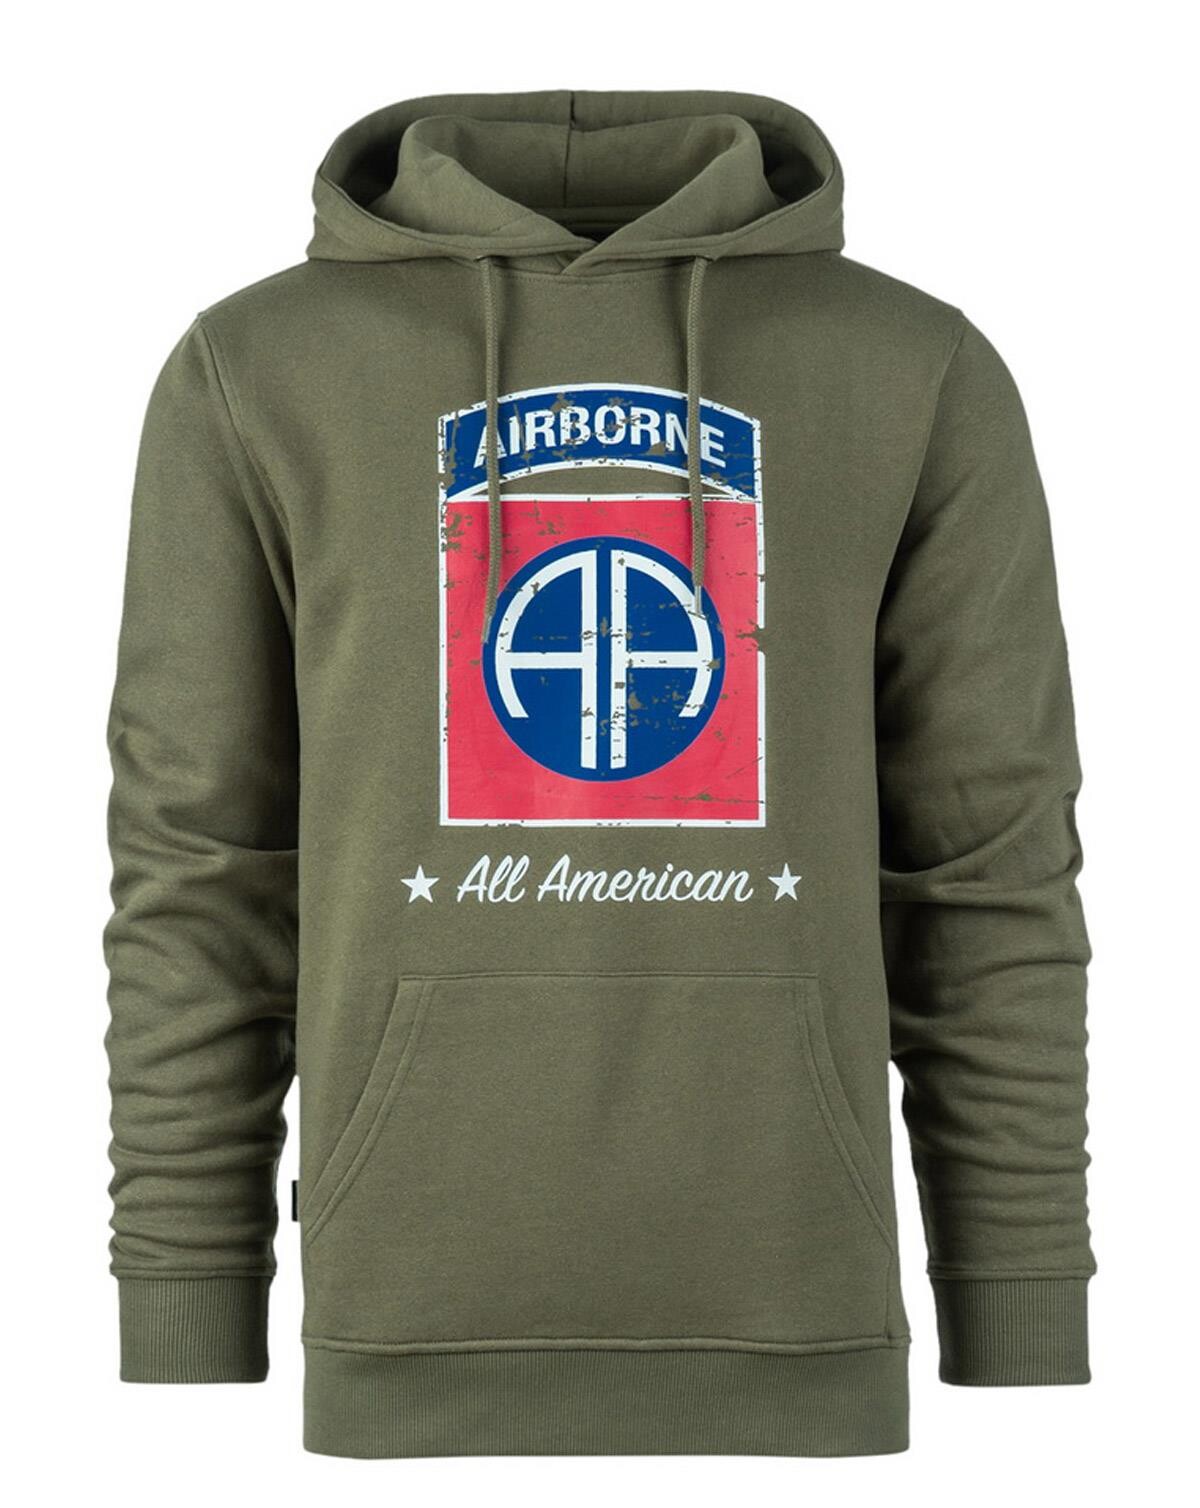 Fostex Hoodie 82nd Airborne Division (Grøn, 2XL)